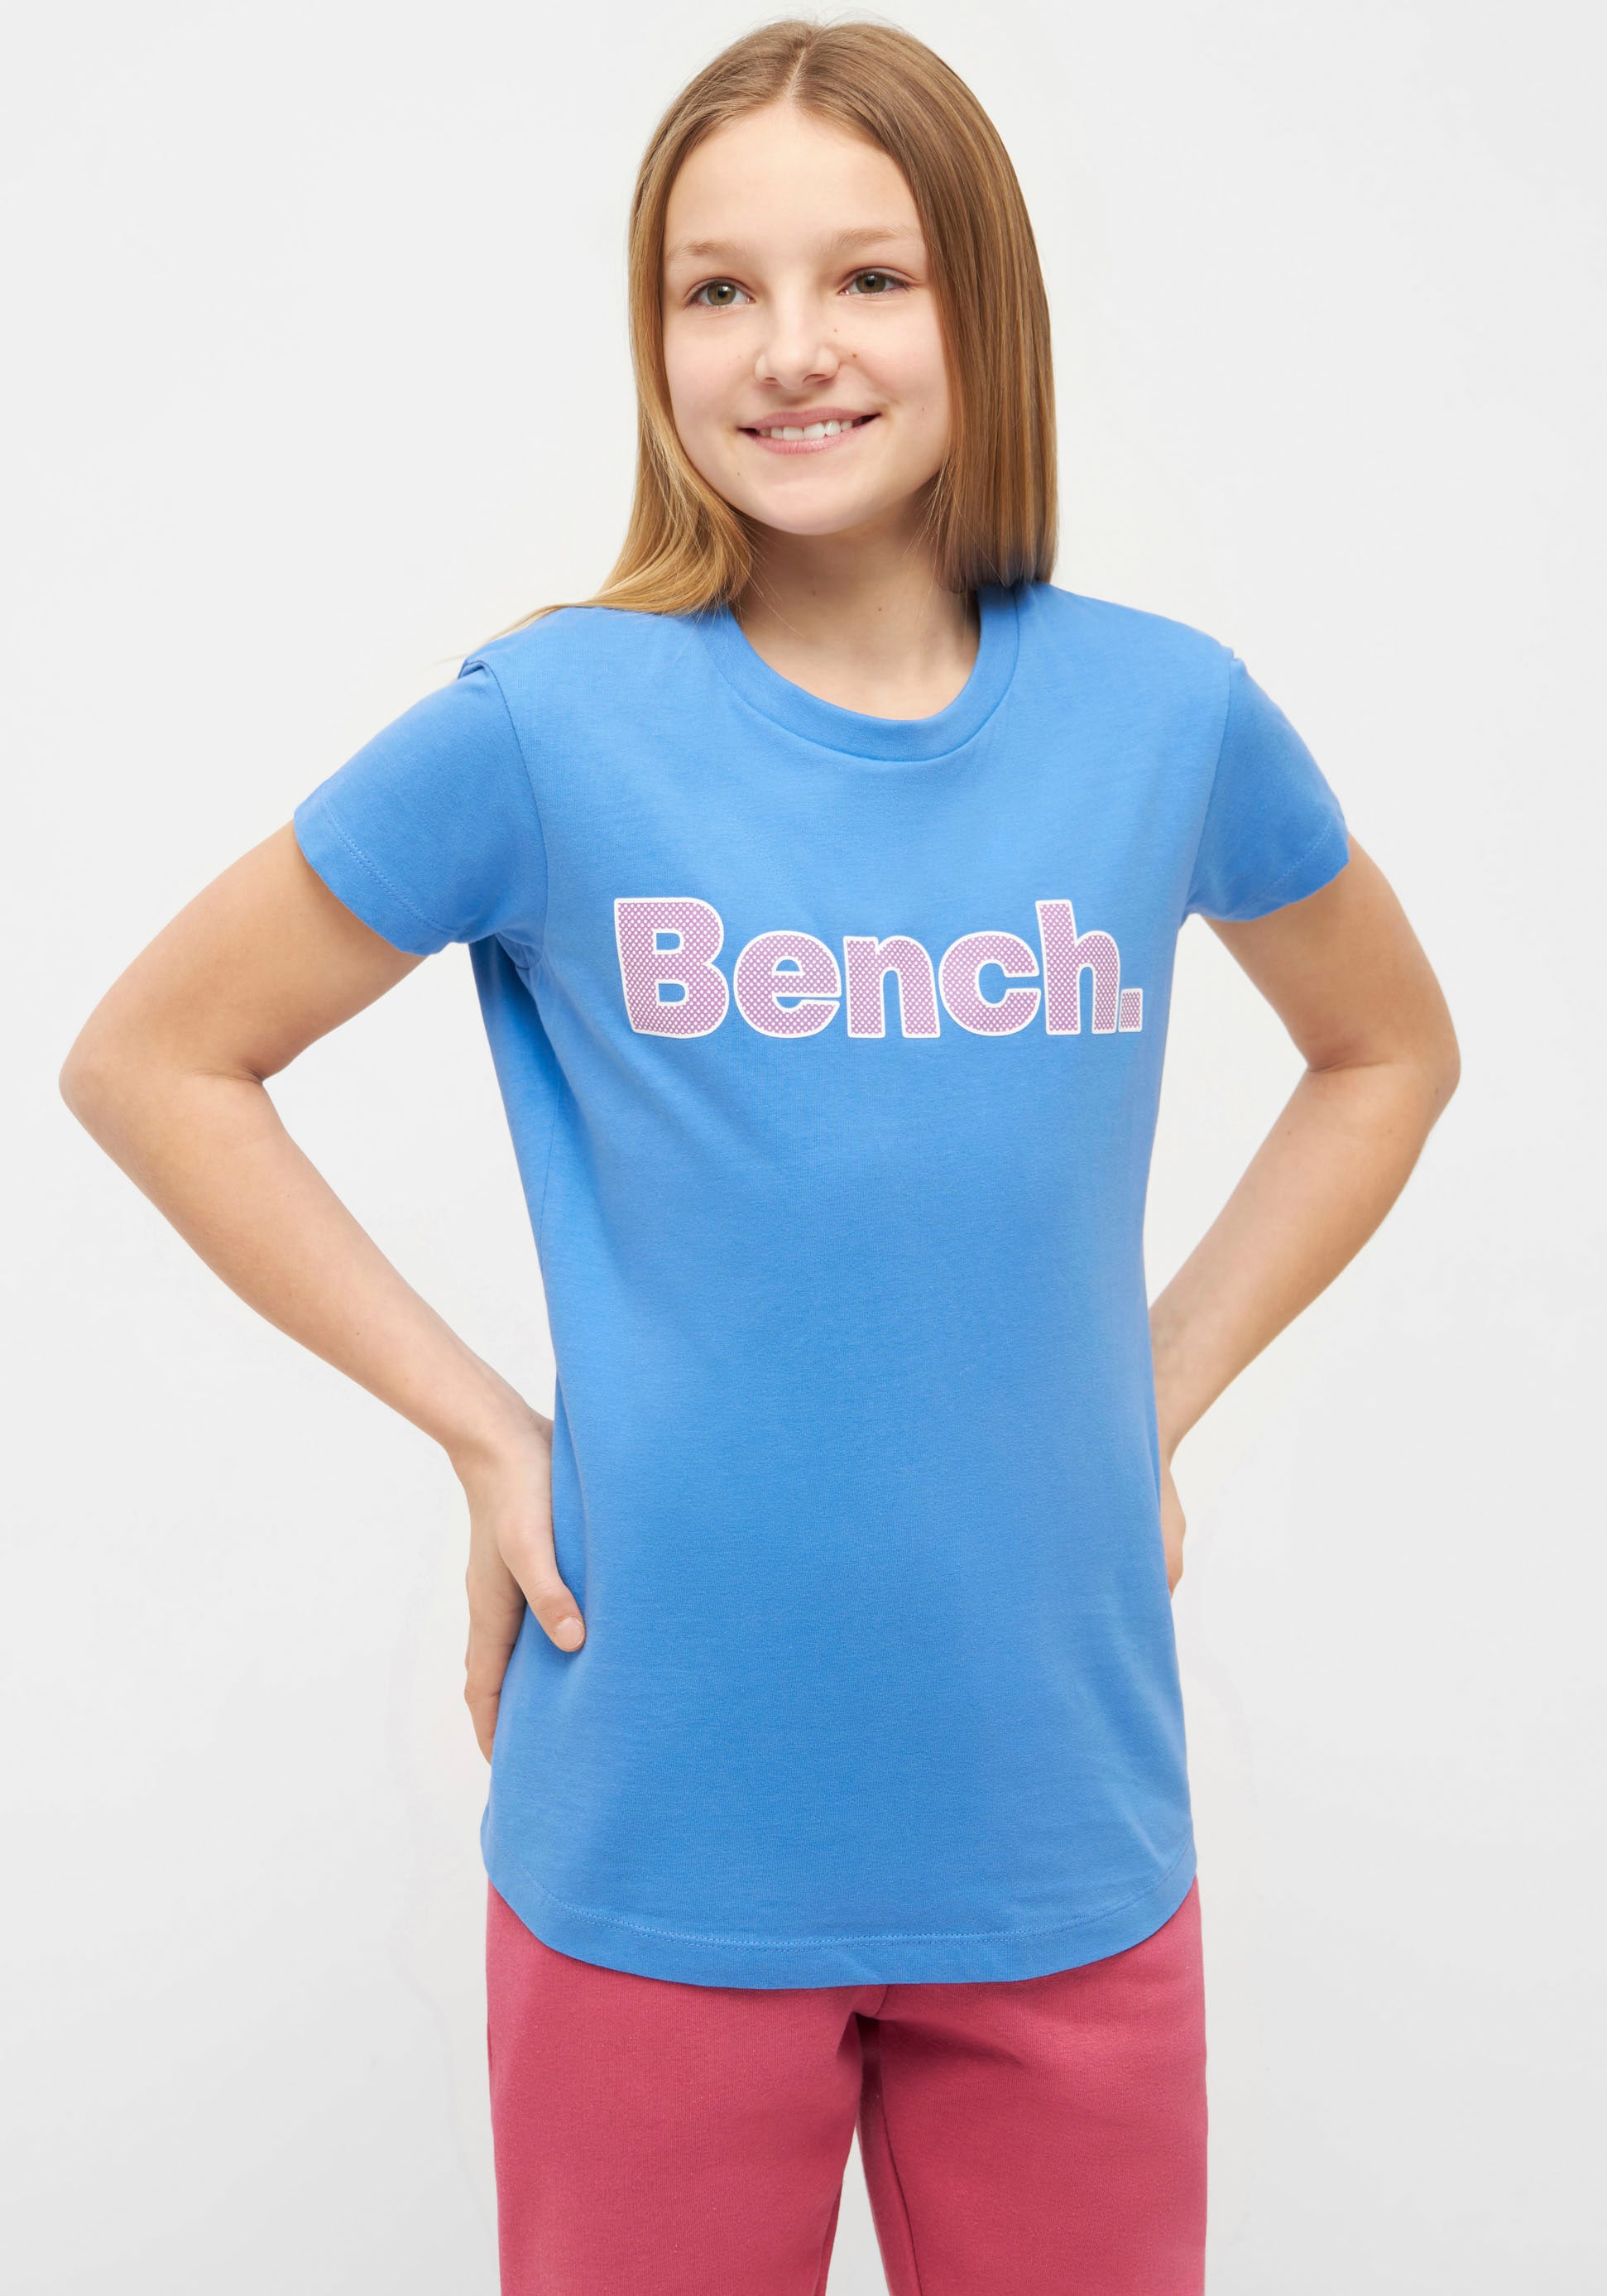 Bench. T-Shirt »LEORAG« kaufen | BAUR